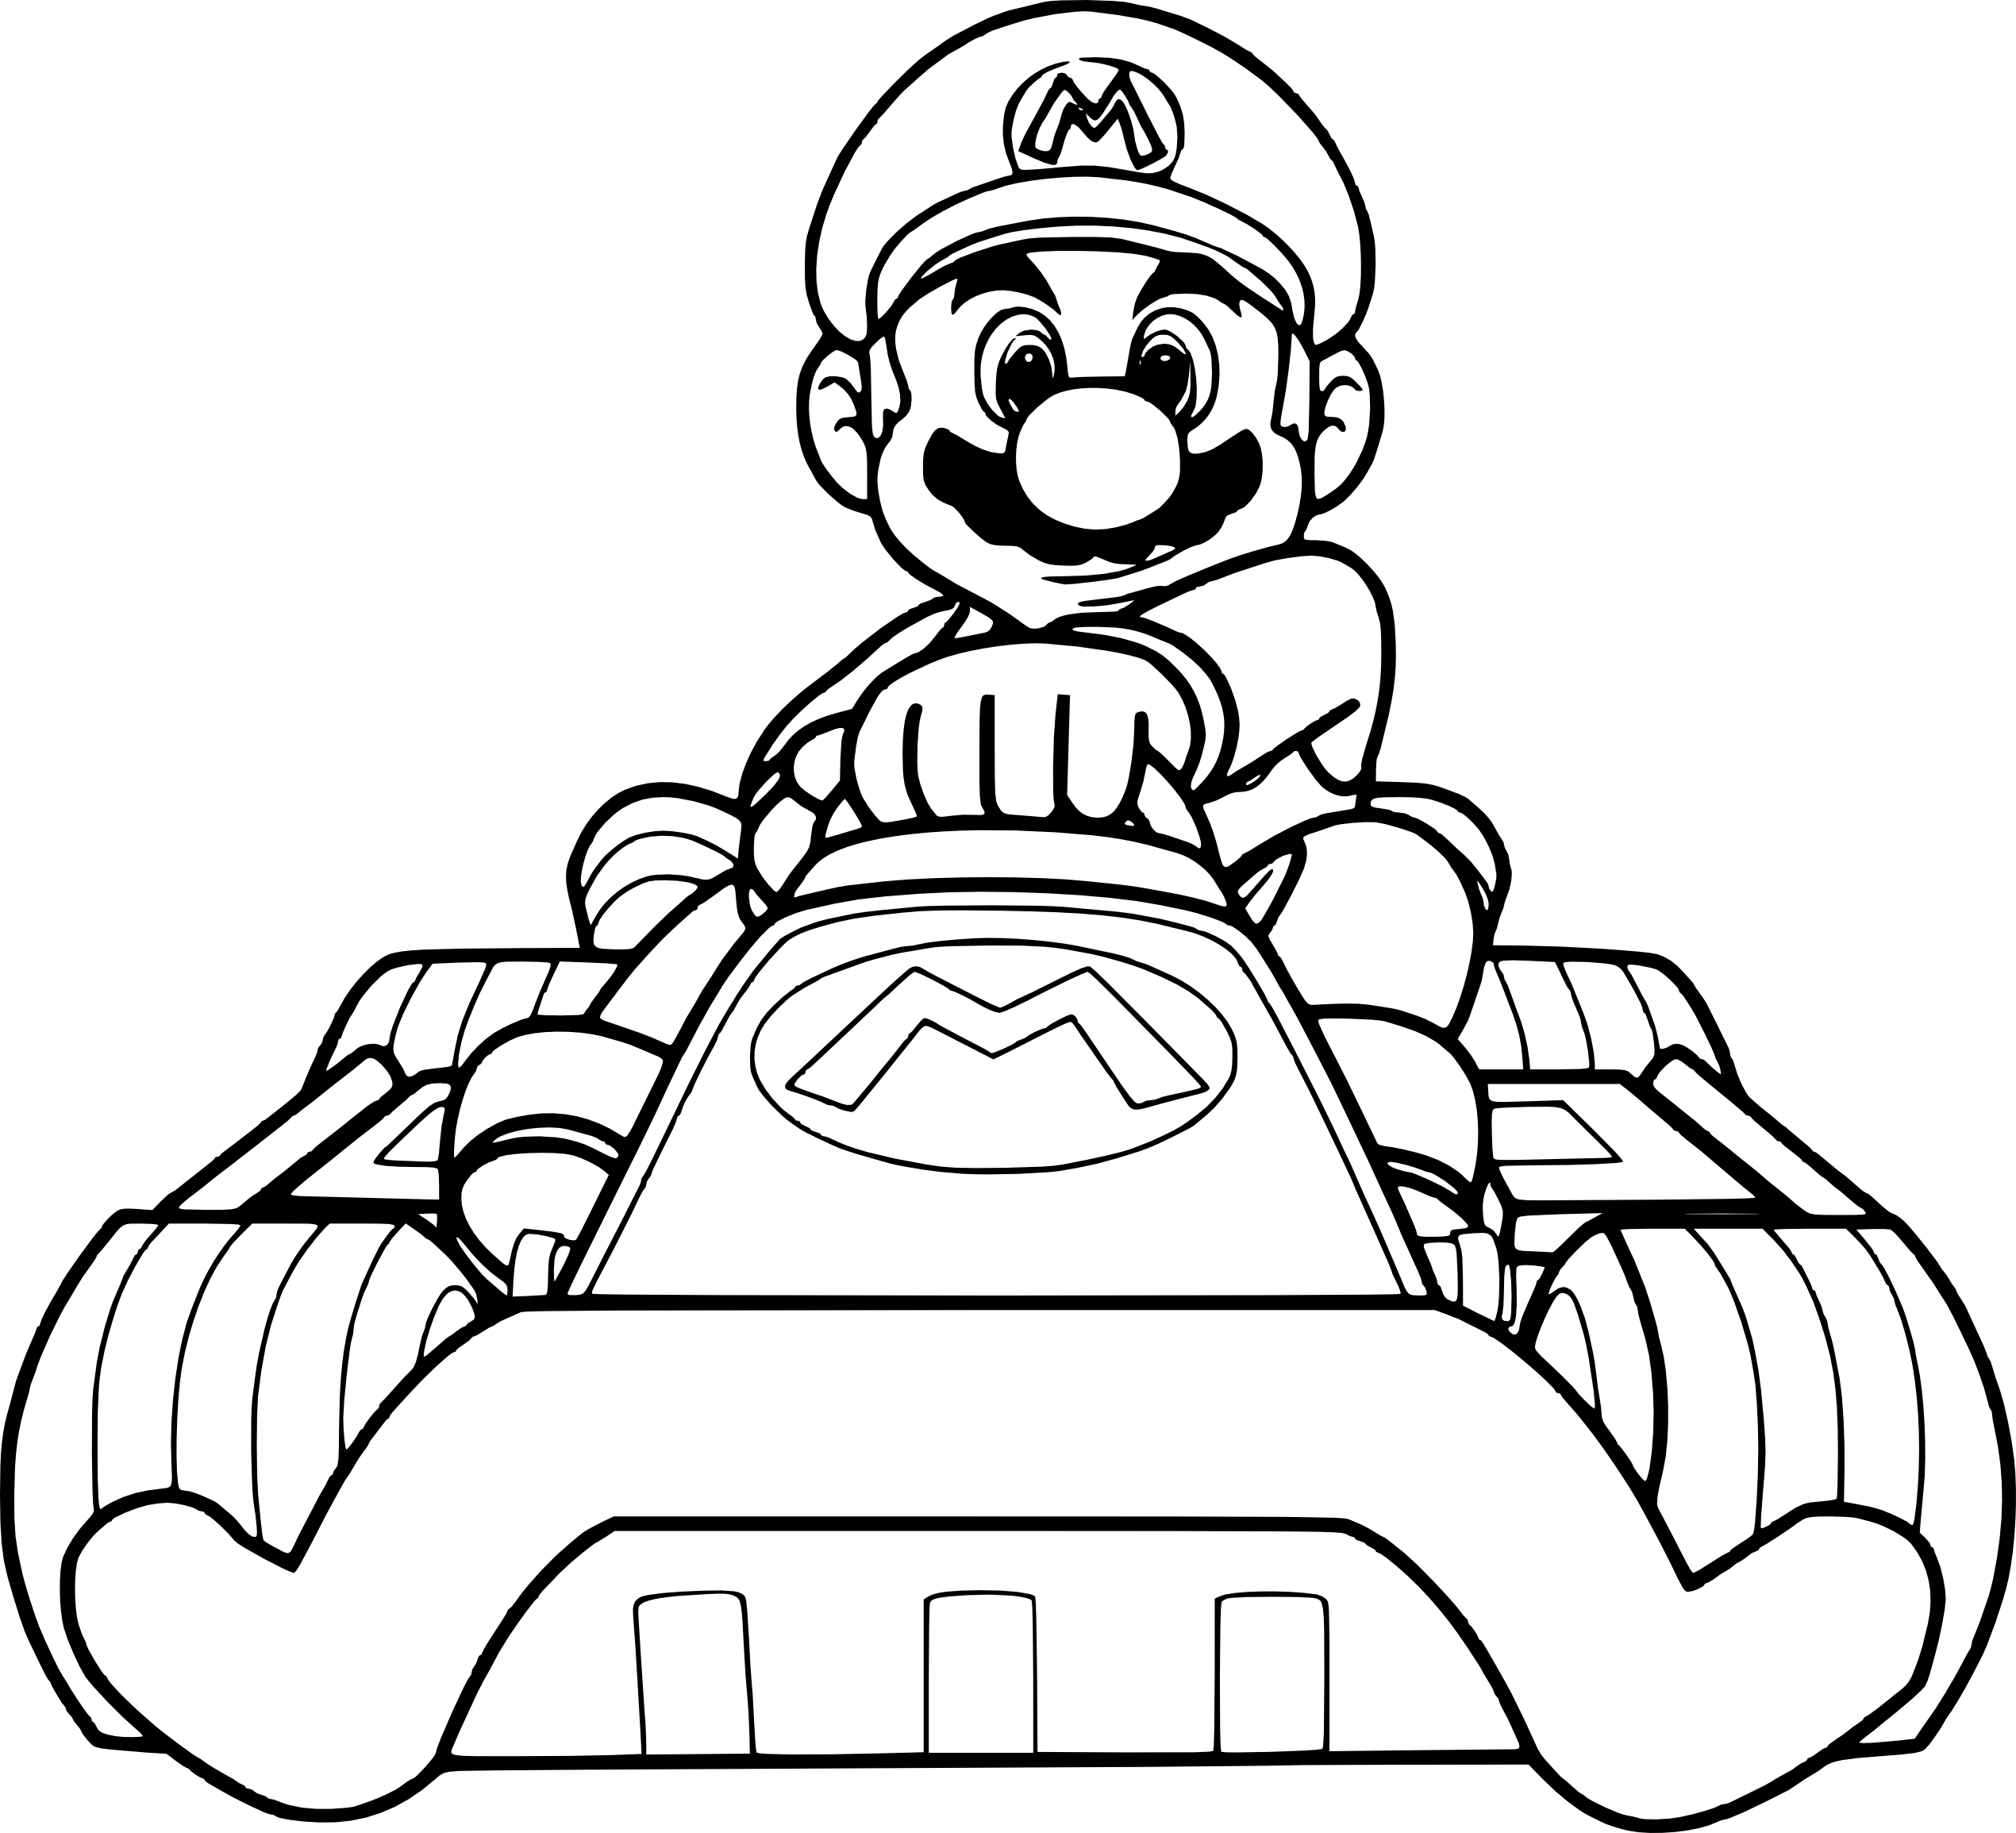 Coloriage Mario Kart à imprimer